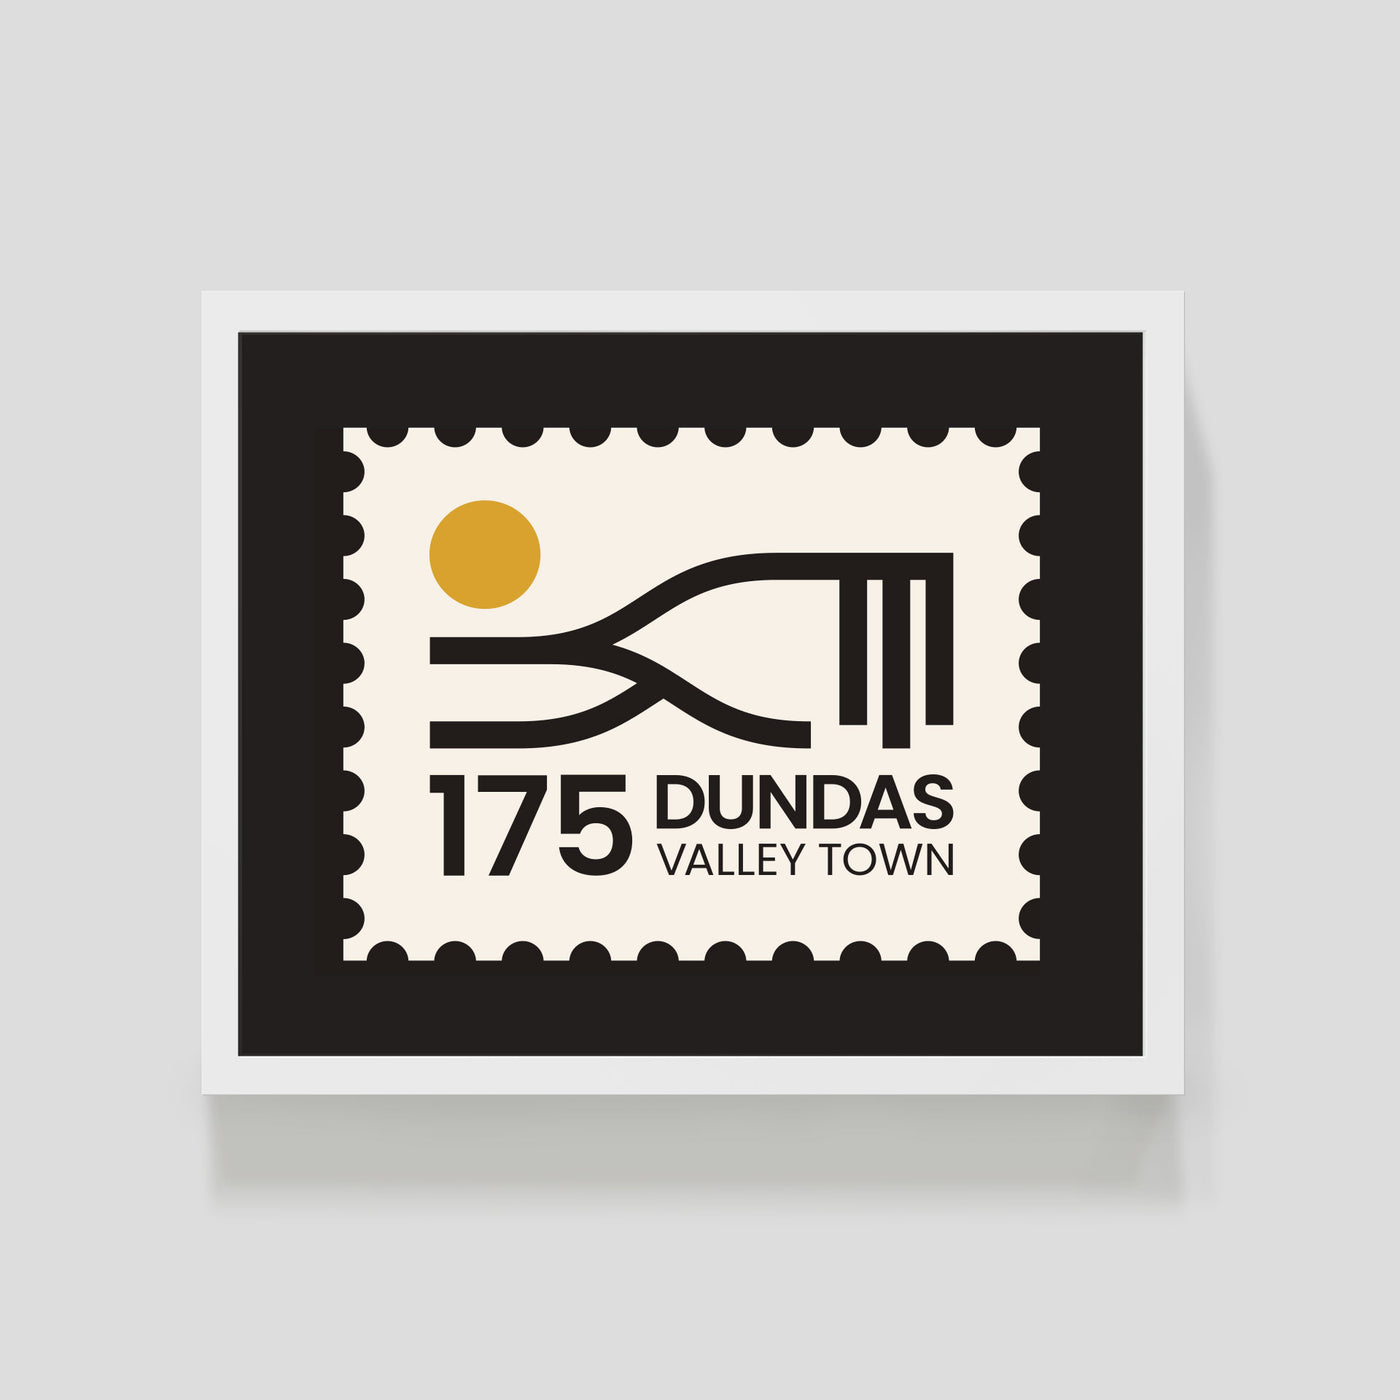 Dundas 175 Stamp Screen Print